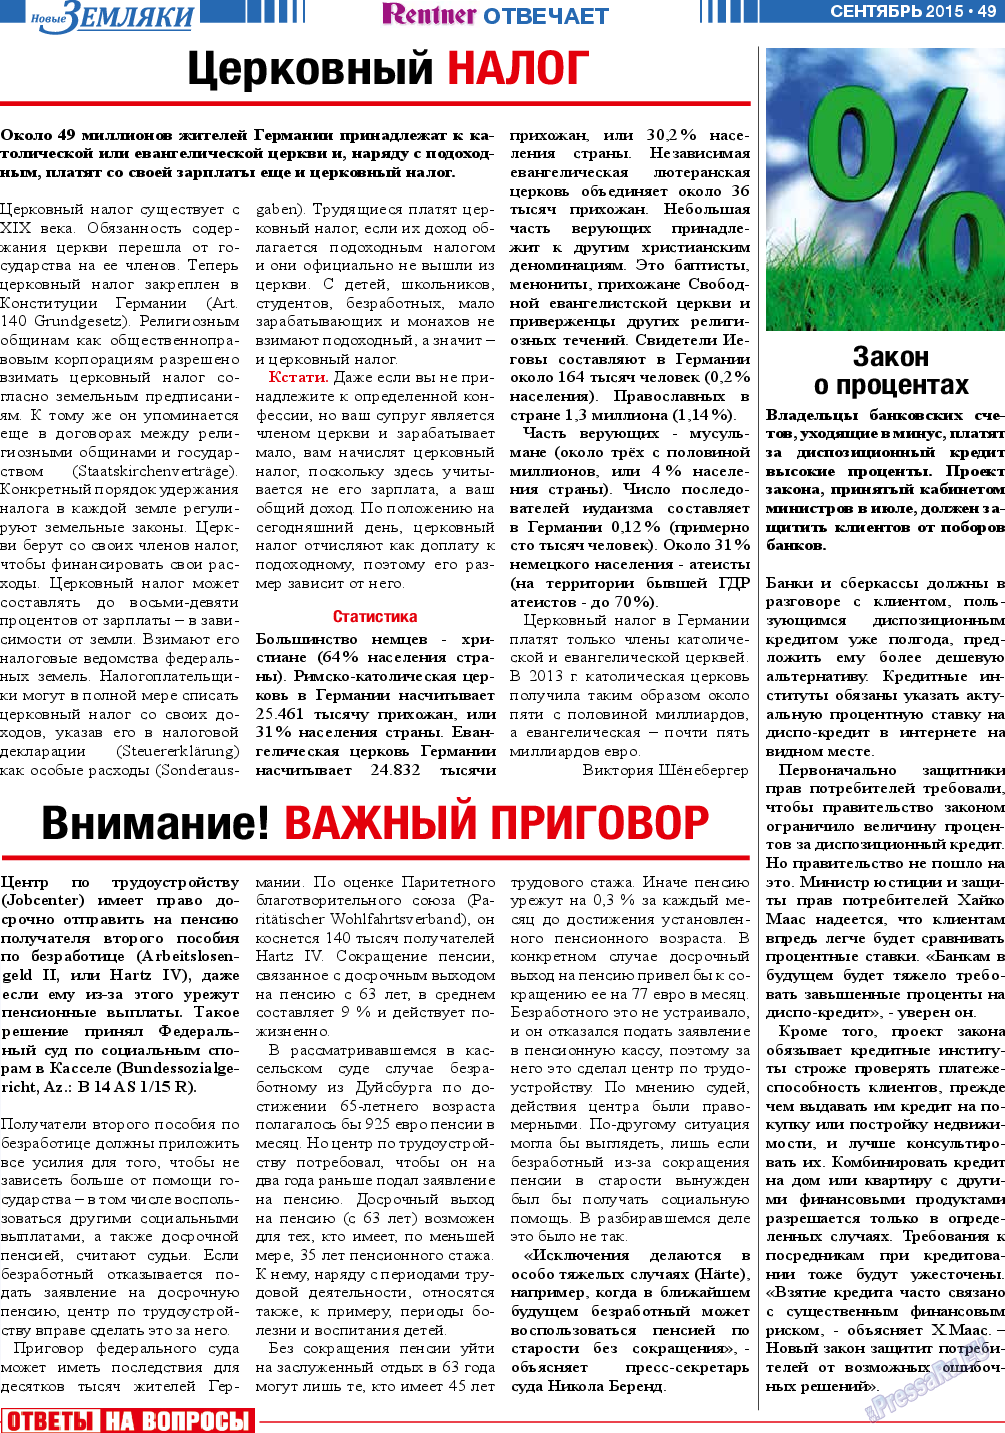 Новые Земляки, газета. 2015 №9 стр.49